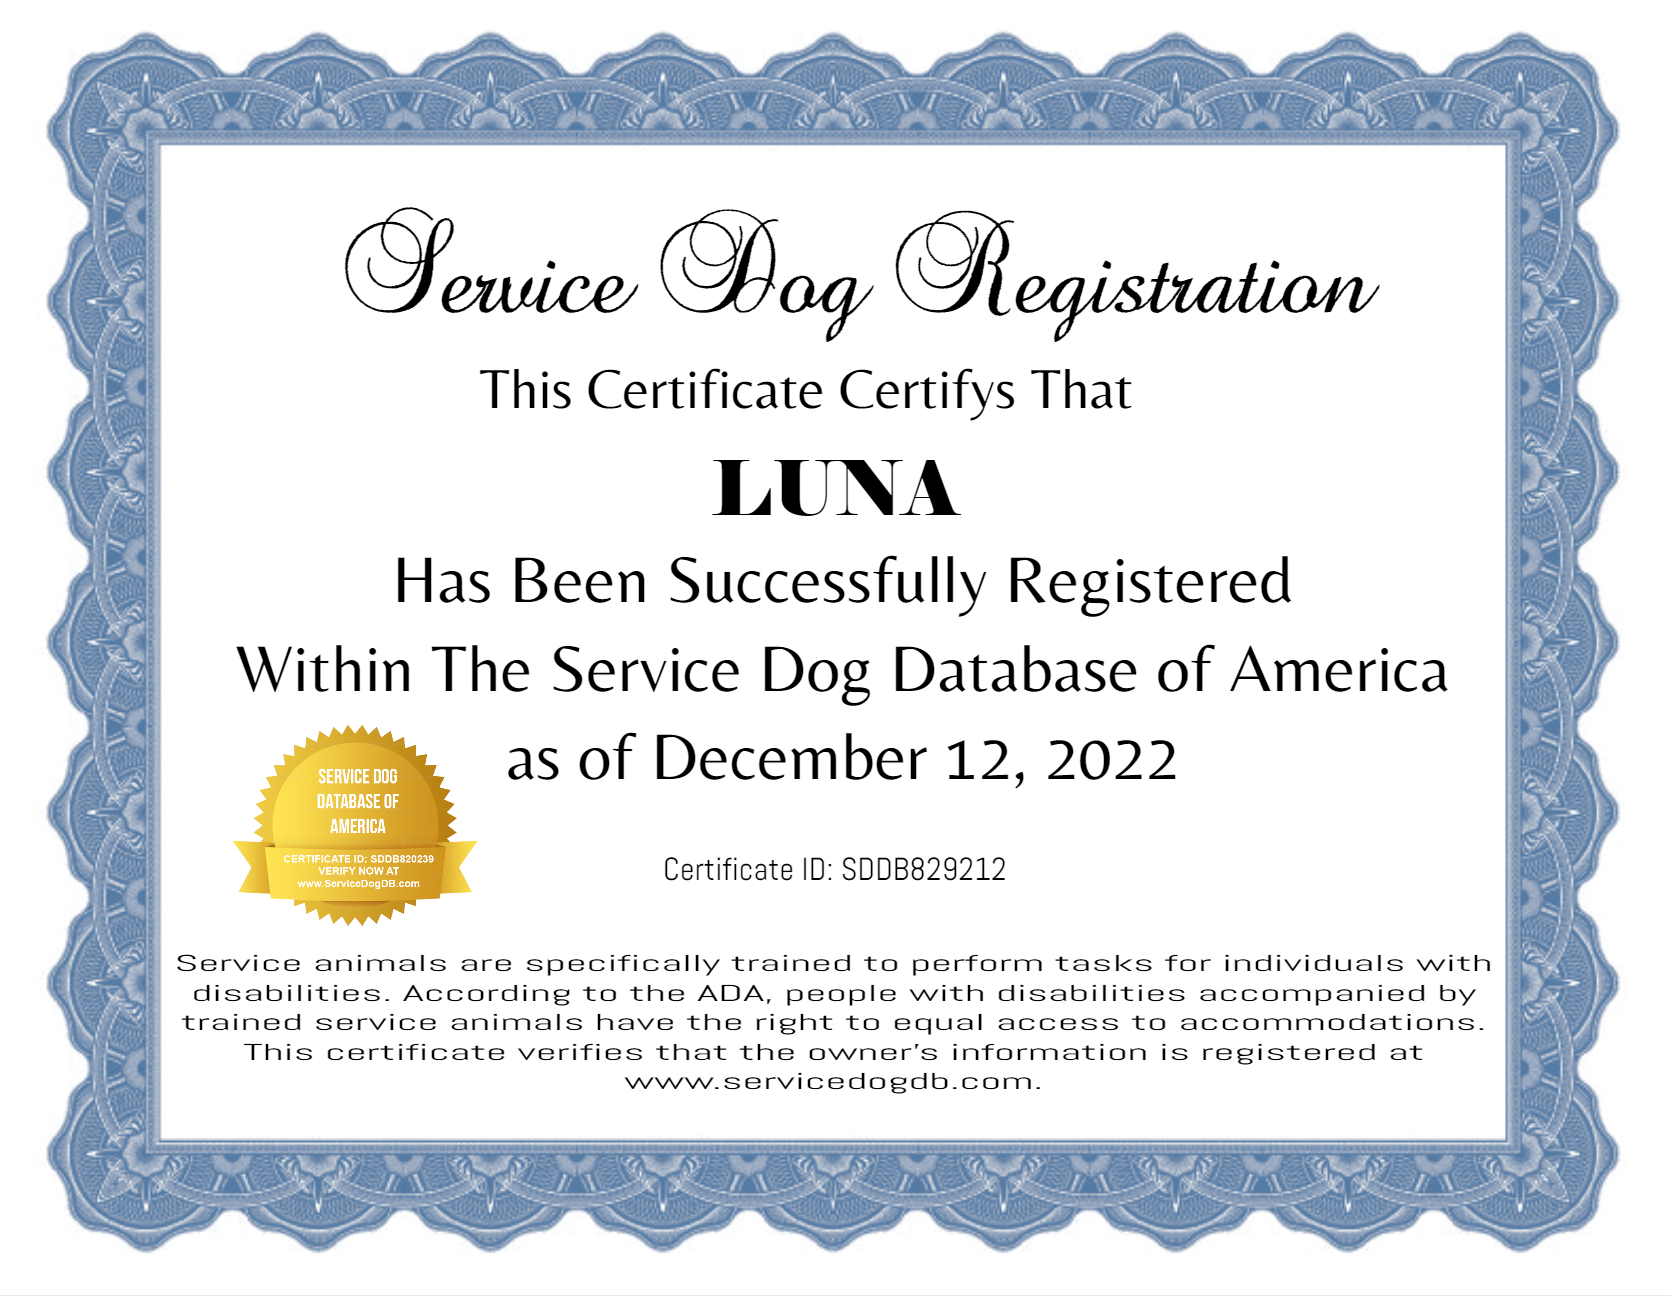 Service Dog Certificate of Registration